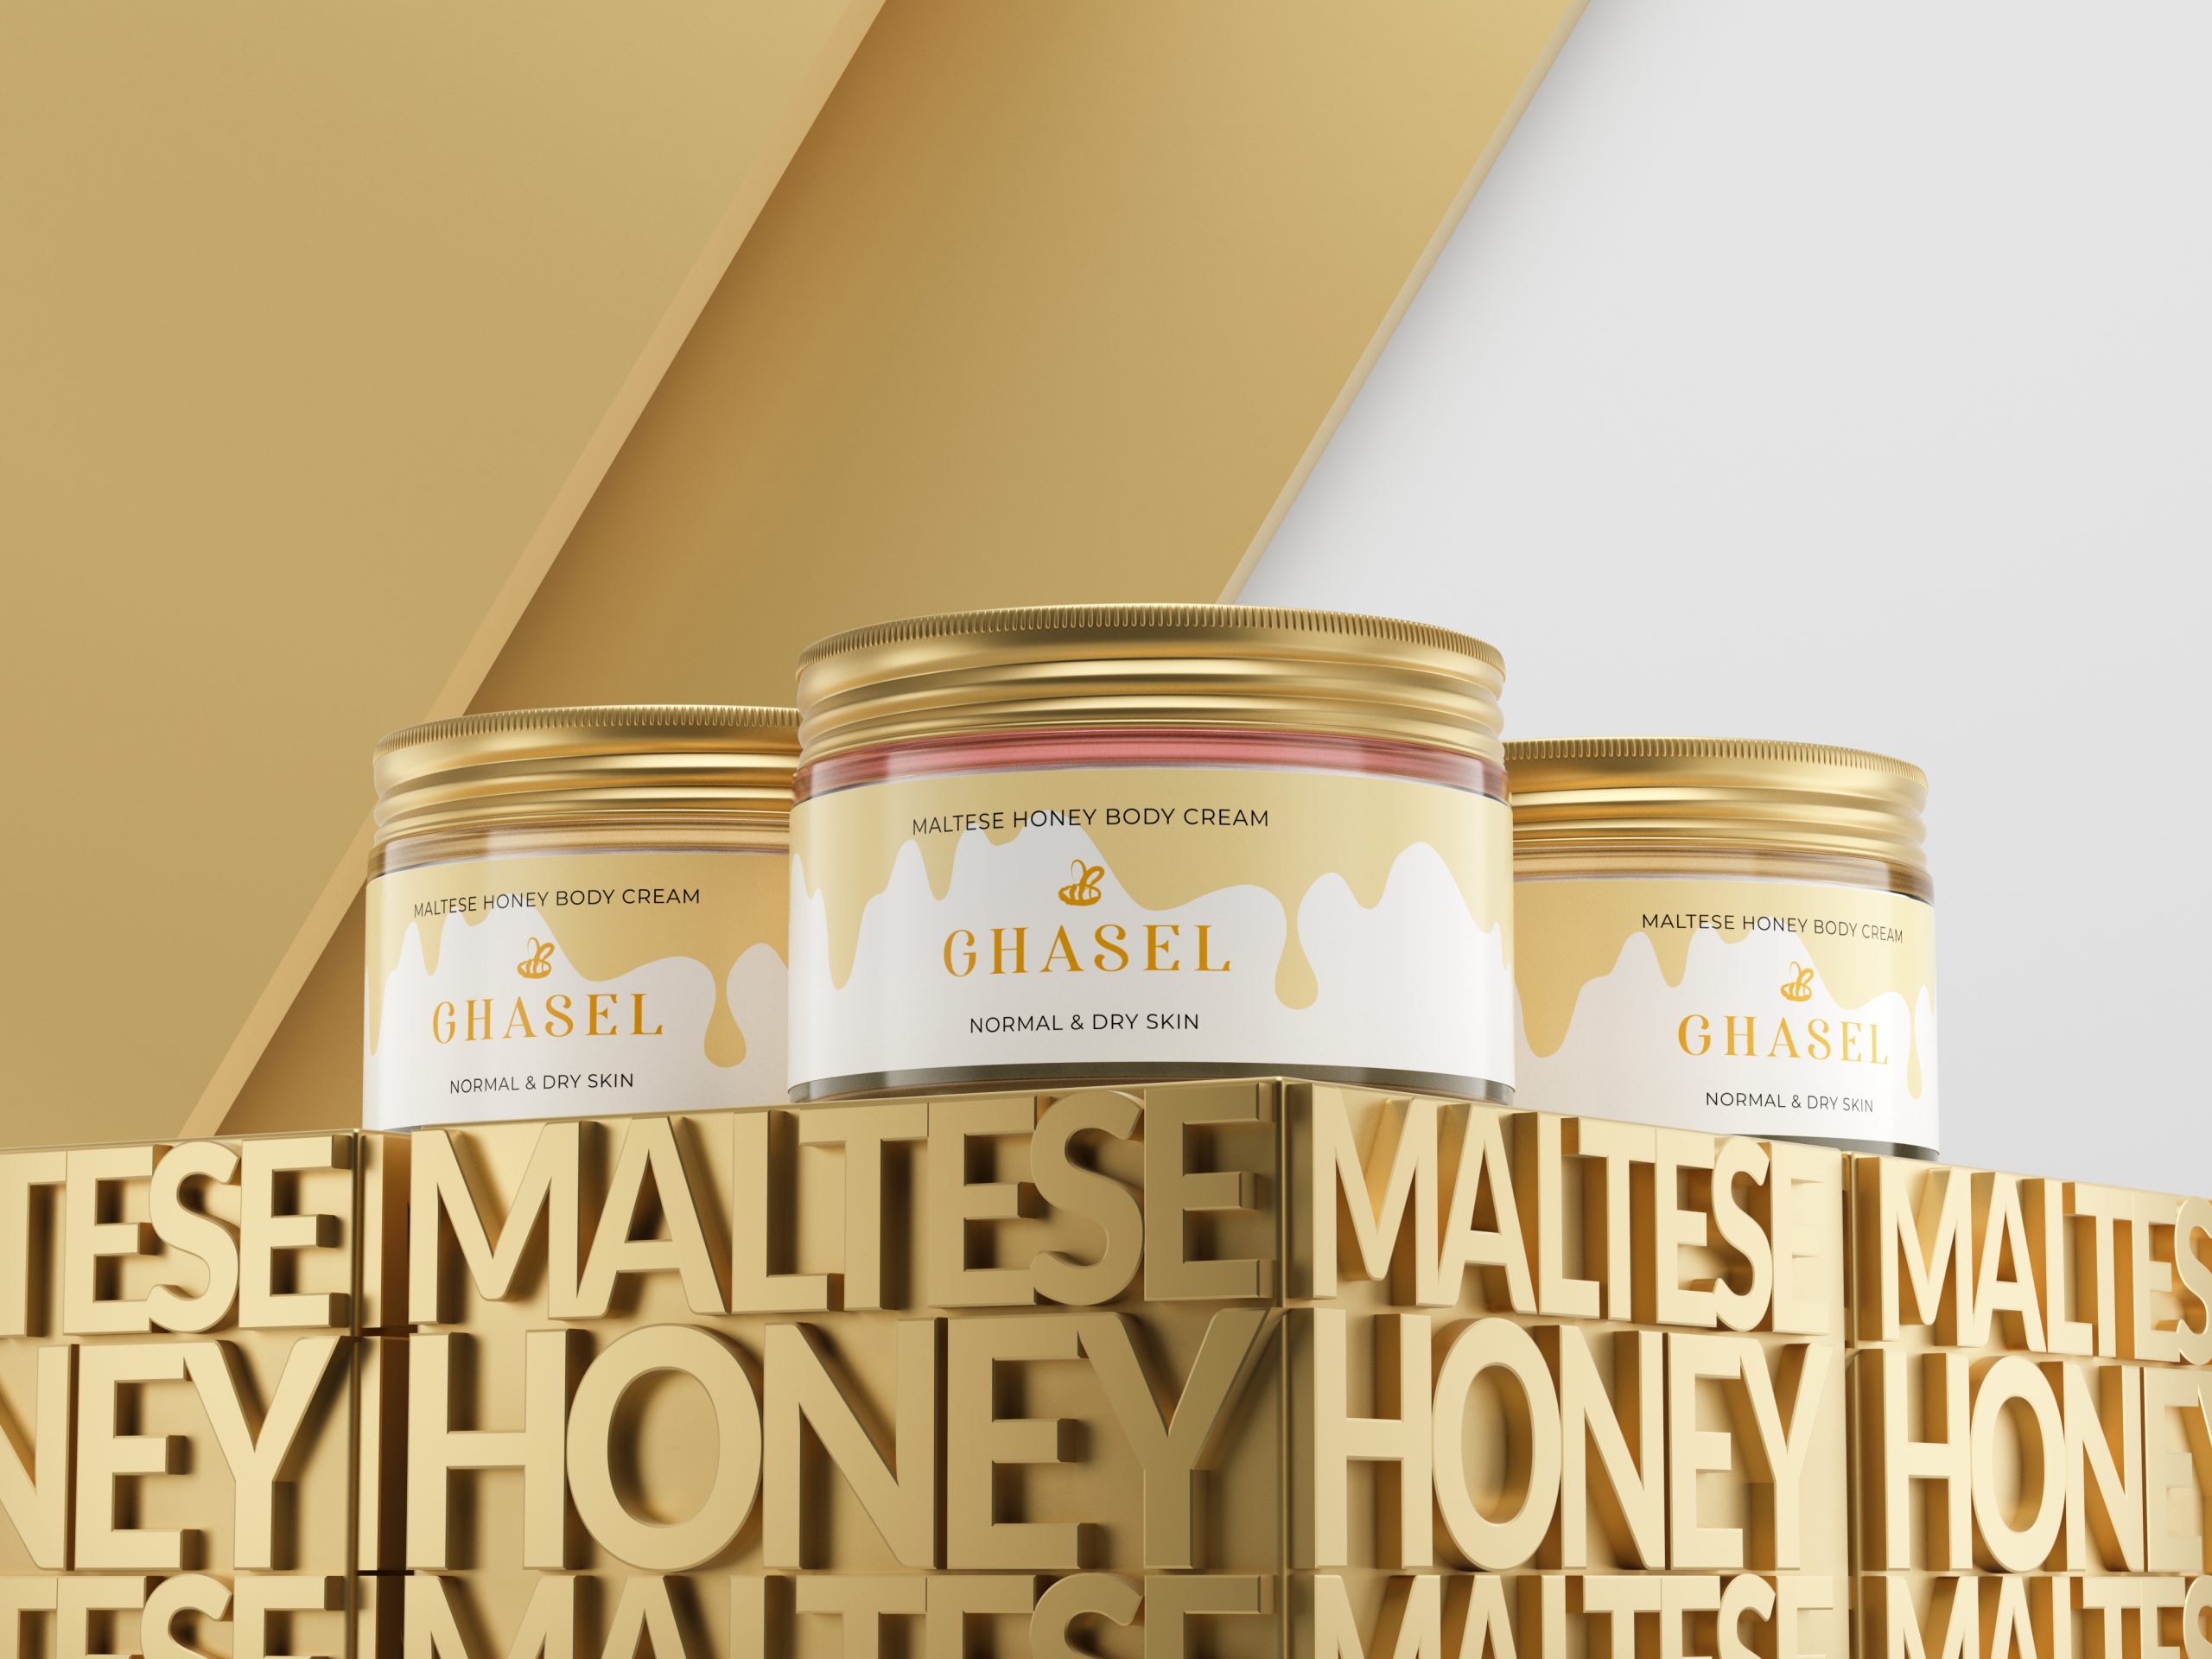 Traitez efficacement vote peau au quotidien grâce à la Ghasel Maltese Honey Body Cream ! Quels sont les effets de ce cosmétique?